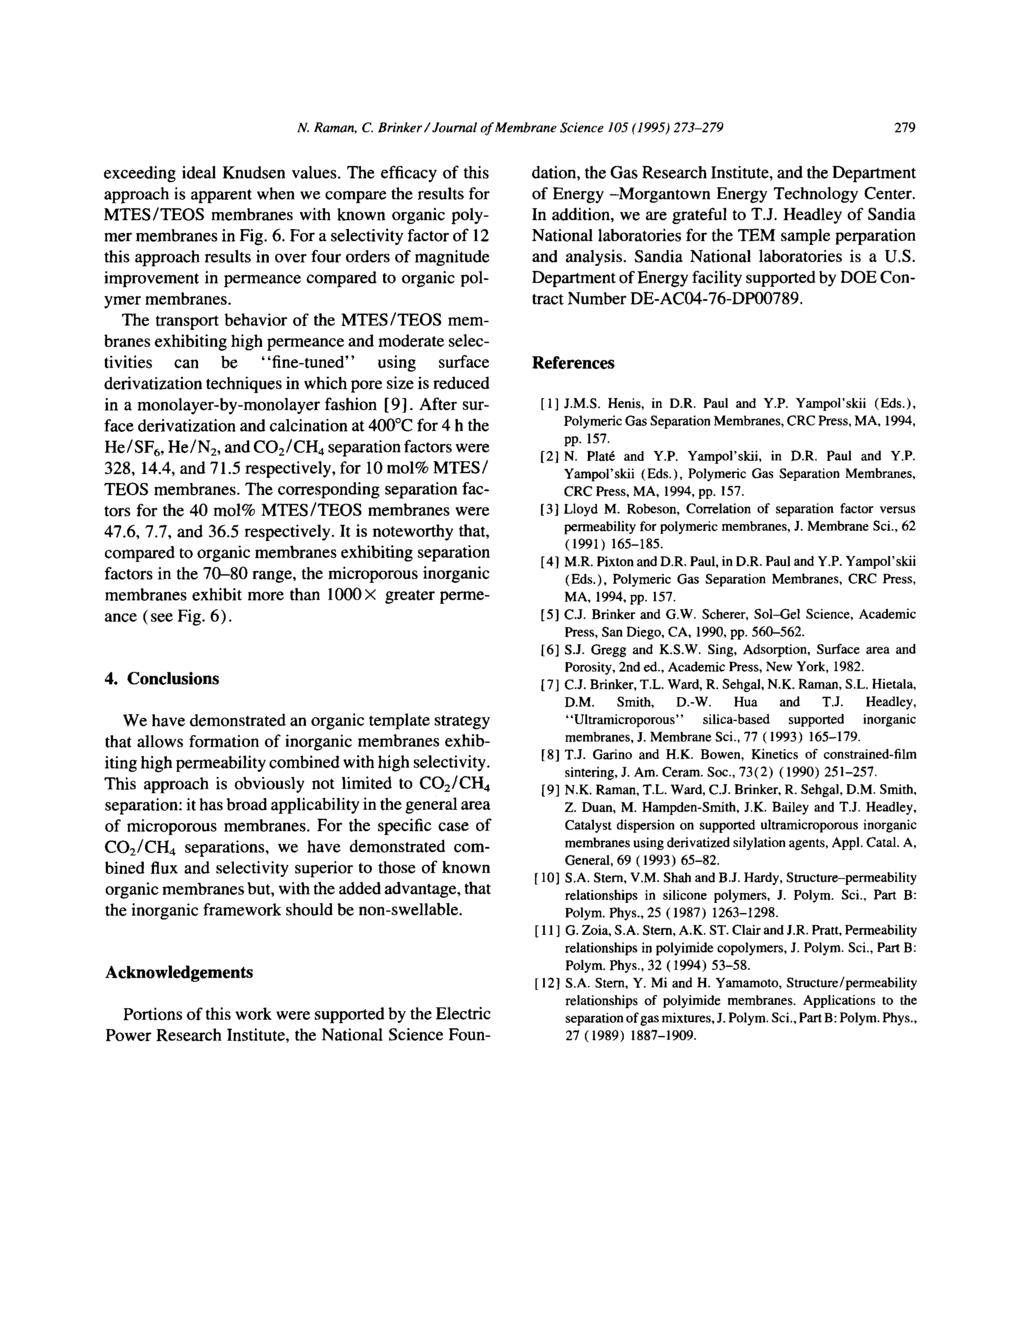 N. Raman, C. Brinker / Journal of Membrane Science 105 (1995) 273-279 279 exceeding ideal Knudsen values.